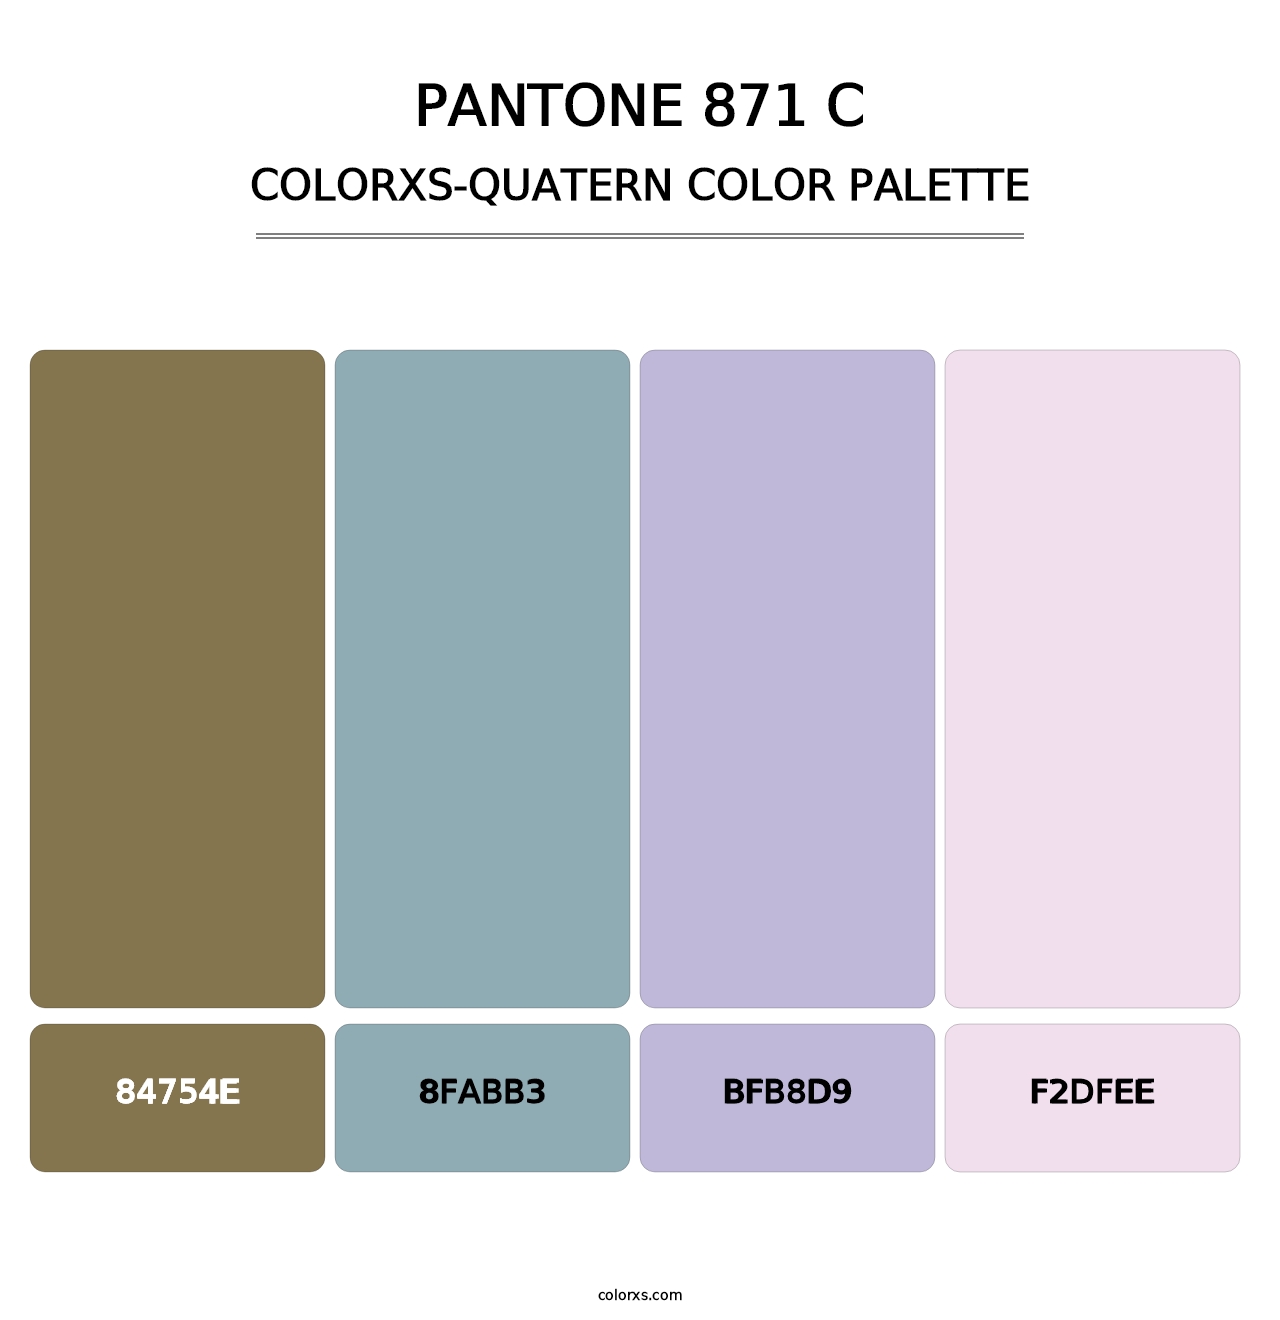 PANTONE 871 C - Colorxs Quatern Palette